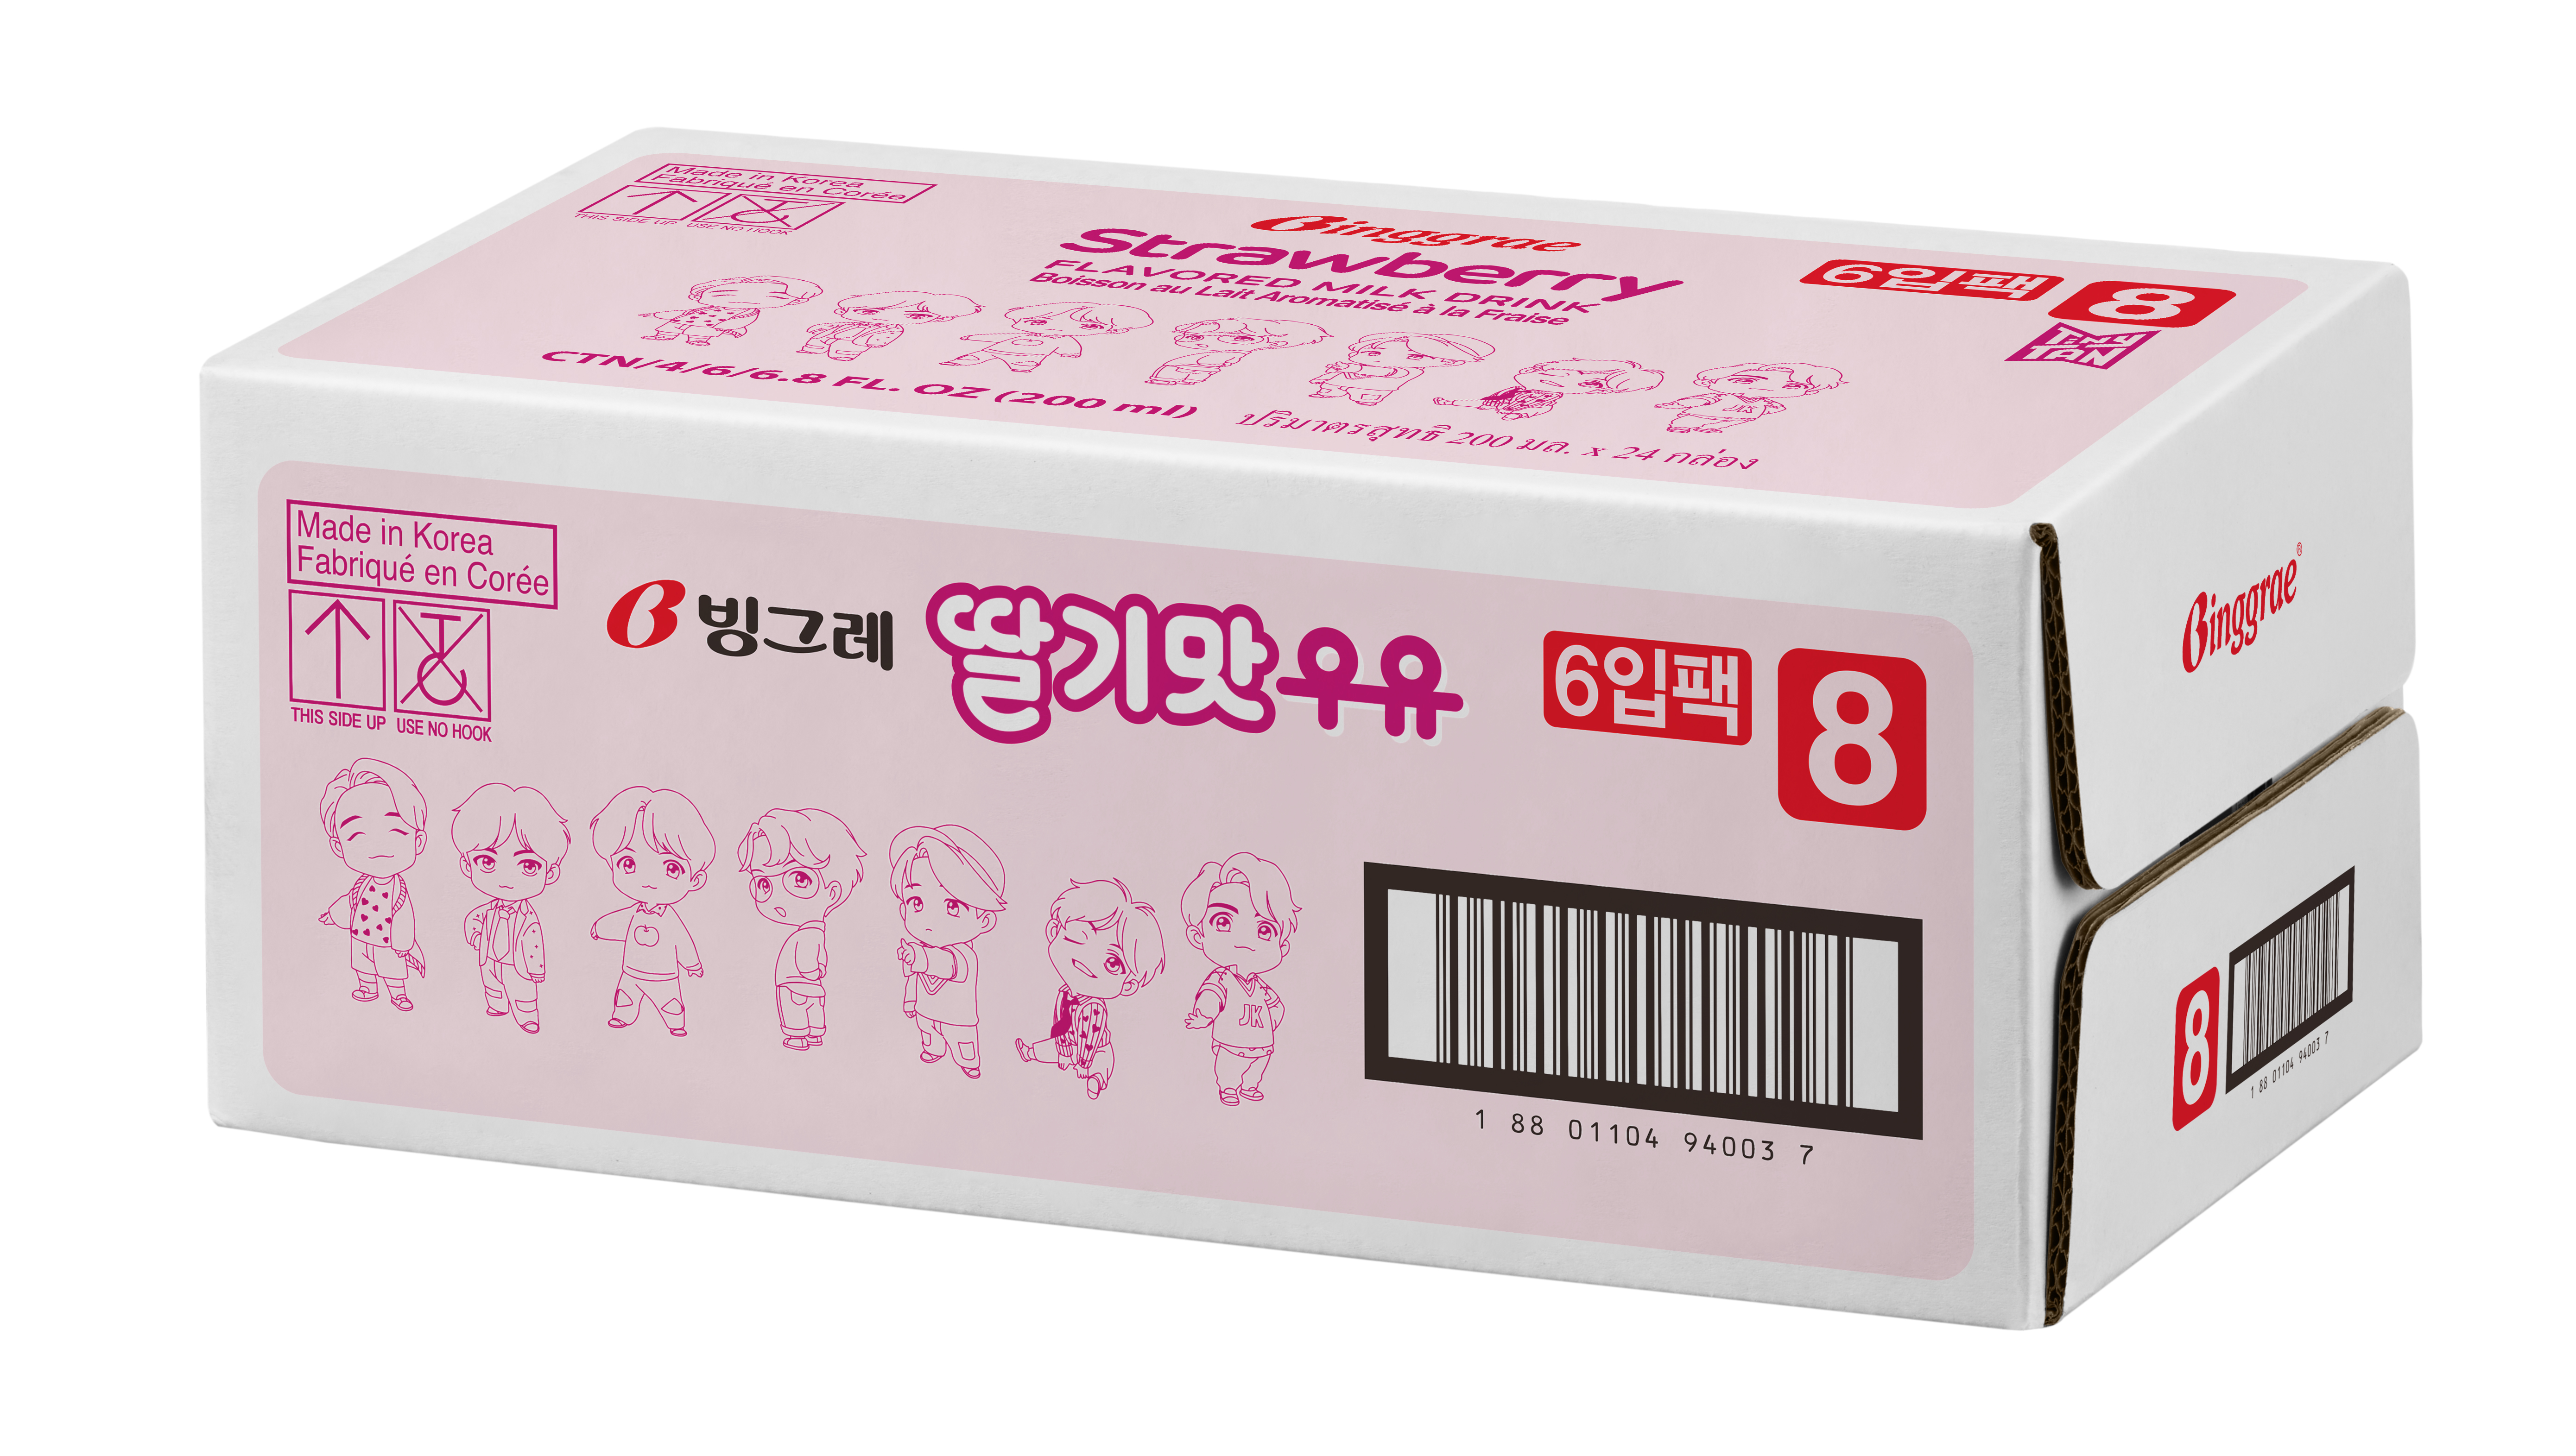 Thùng Sữa Dâu Hàn Quốc Binggrae Strawberry Milk (200ml x 24 hộp)